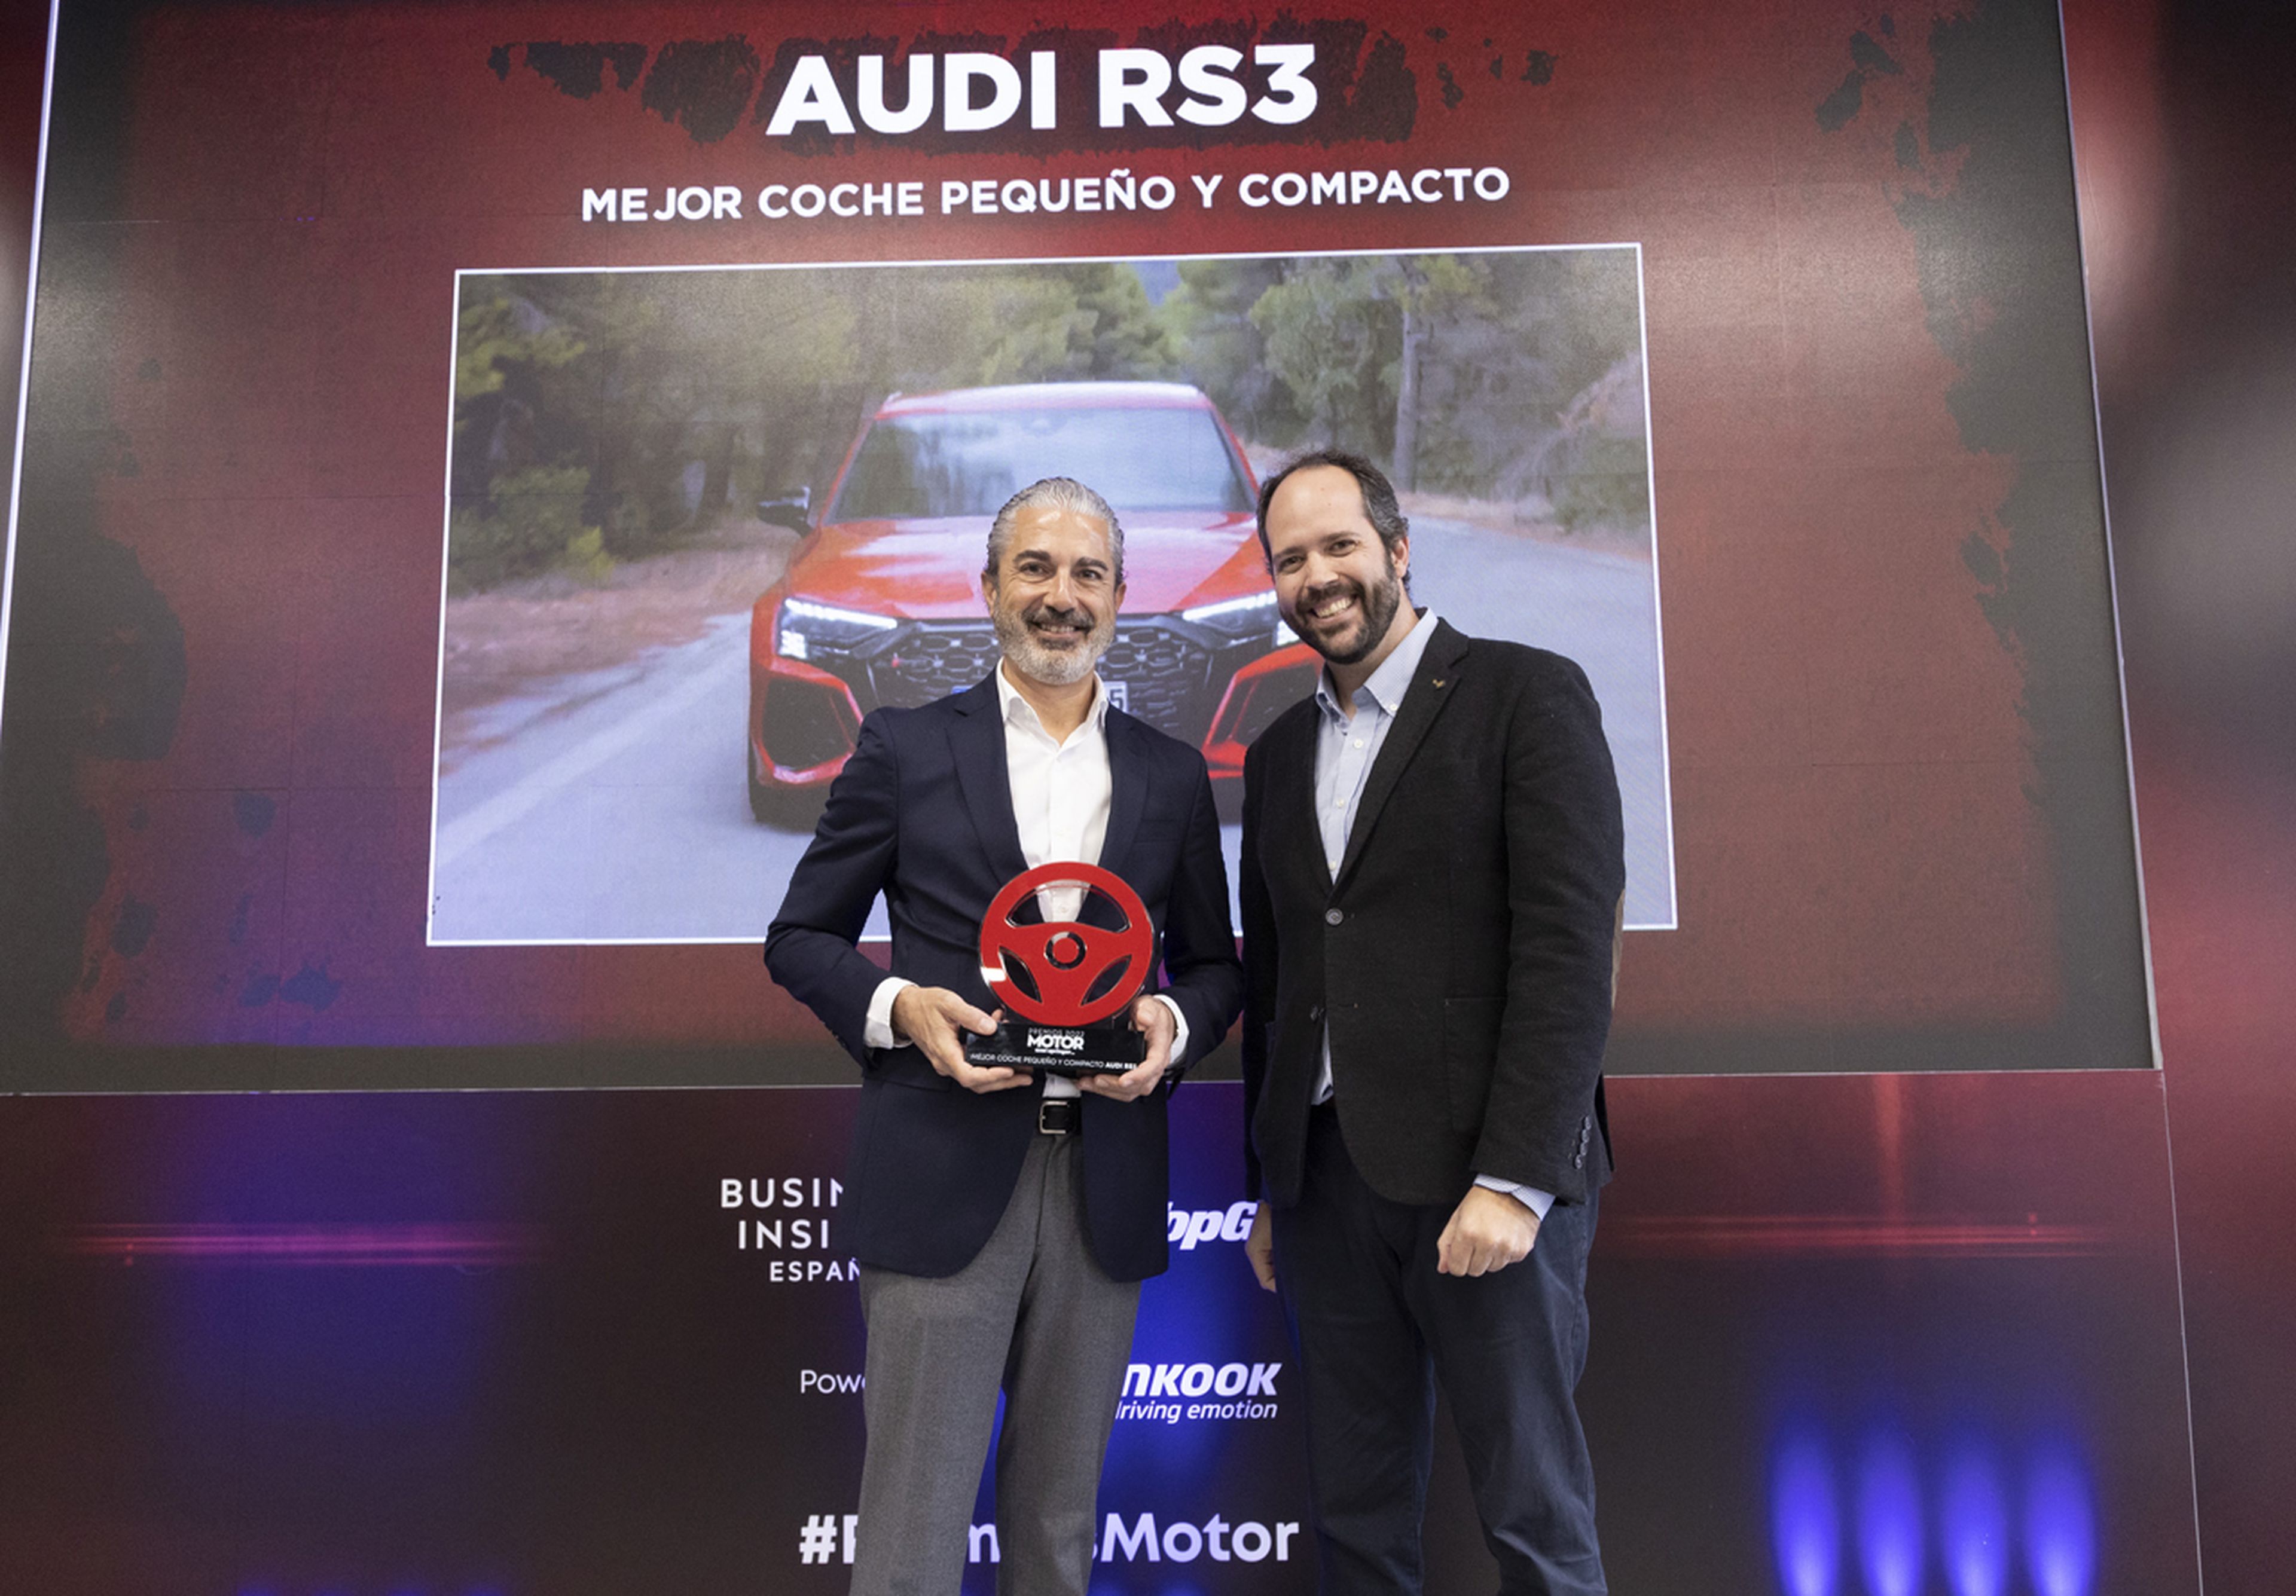 Ignacio Gonzalez, Dircom de Audi España recibe el premio del 'Mejor coche pequeño y compacto' para el Audi RS 3.